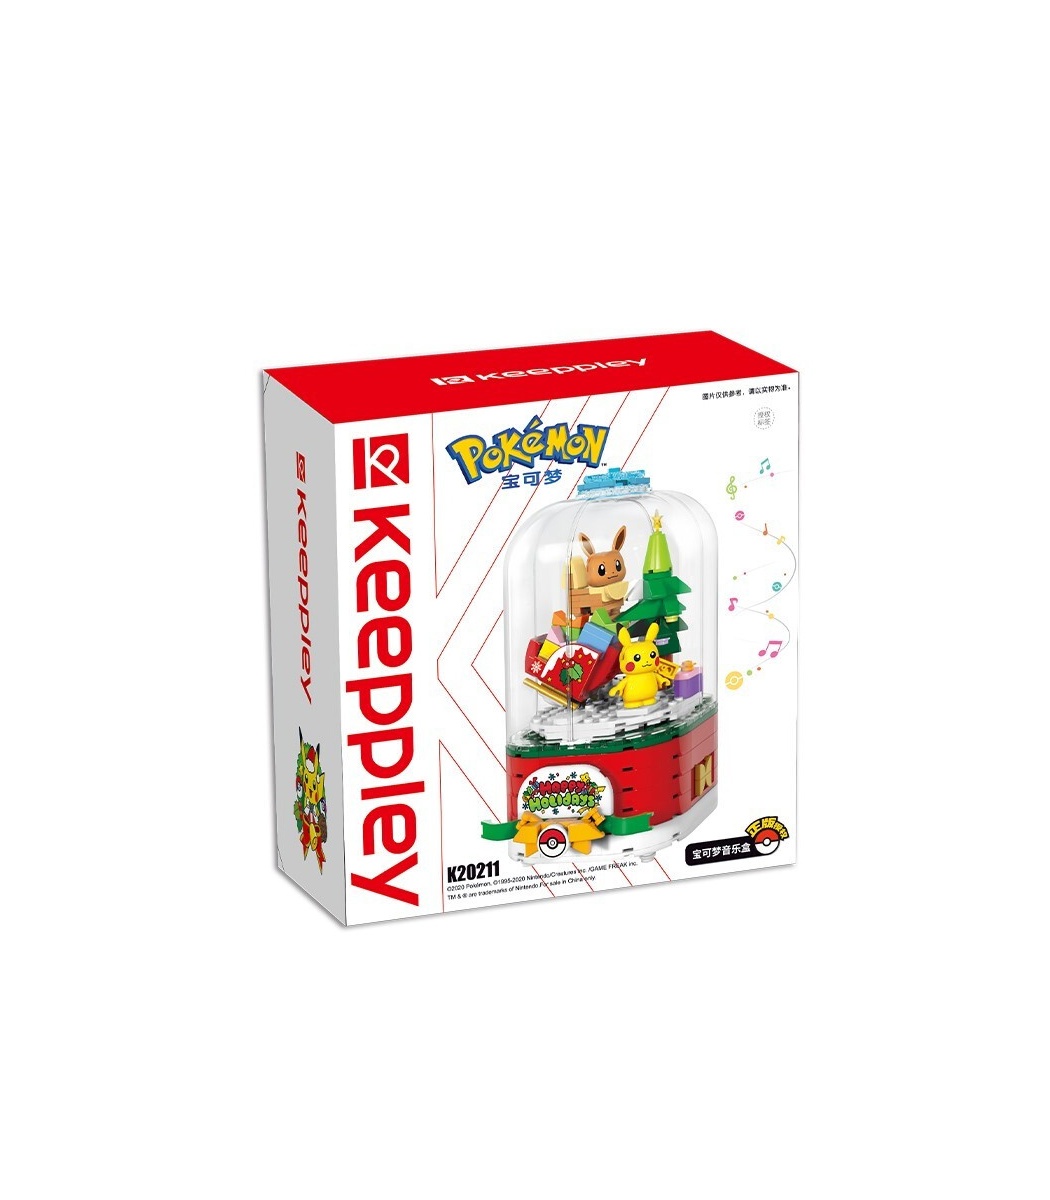 Keeppley K20211 Pokémon Music Box Building Blocks Toy Set